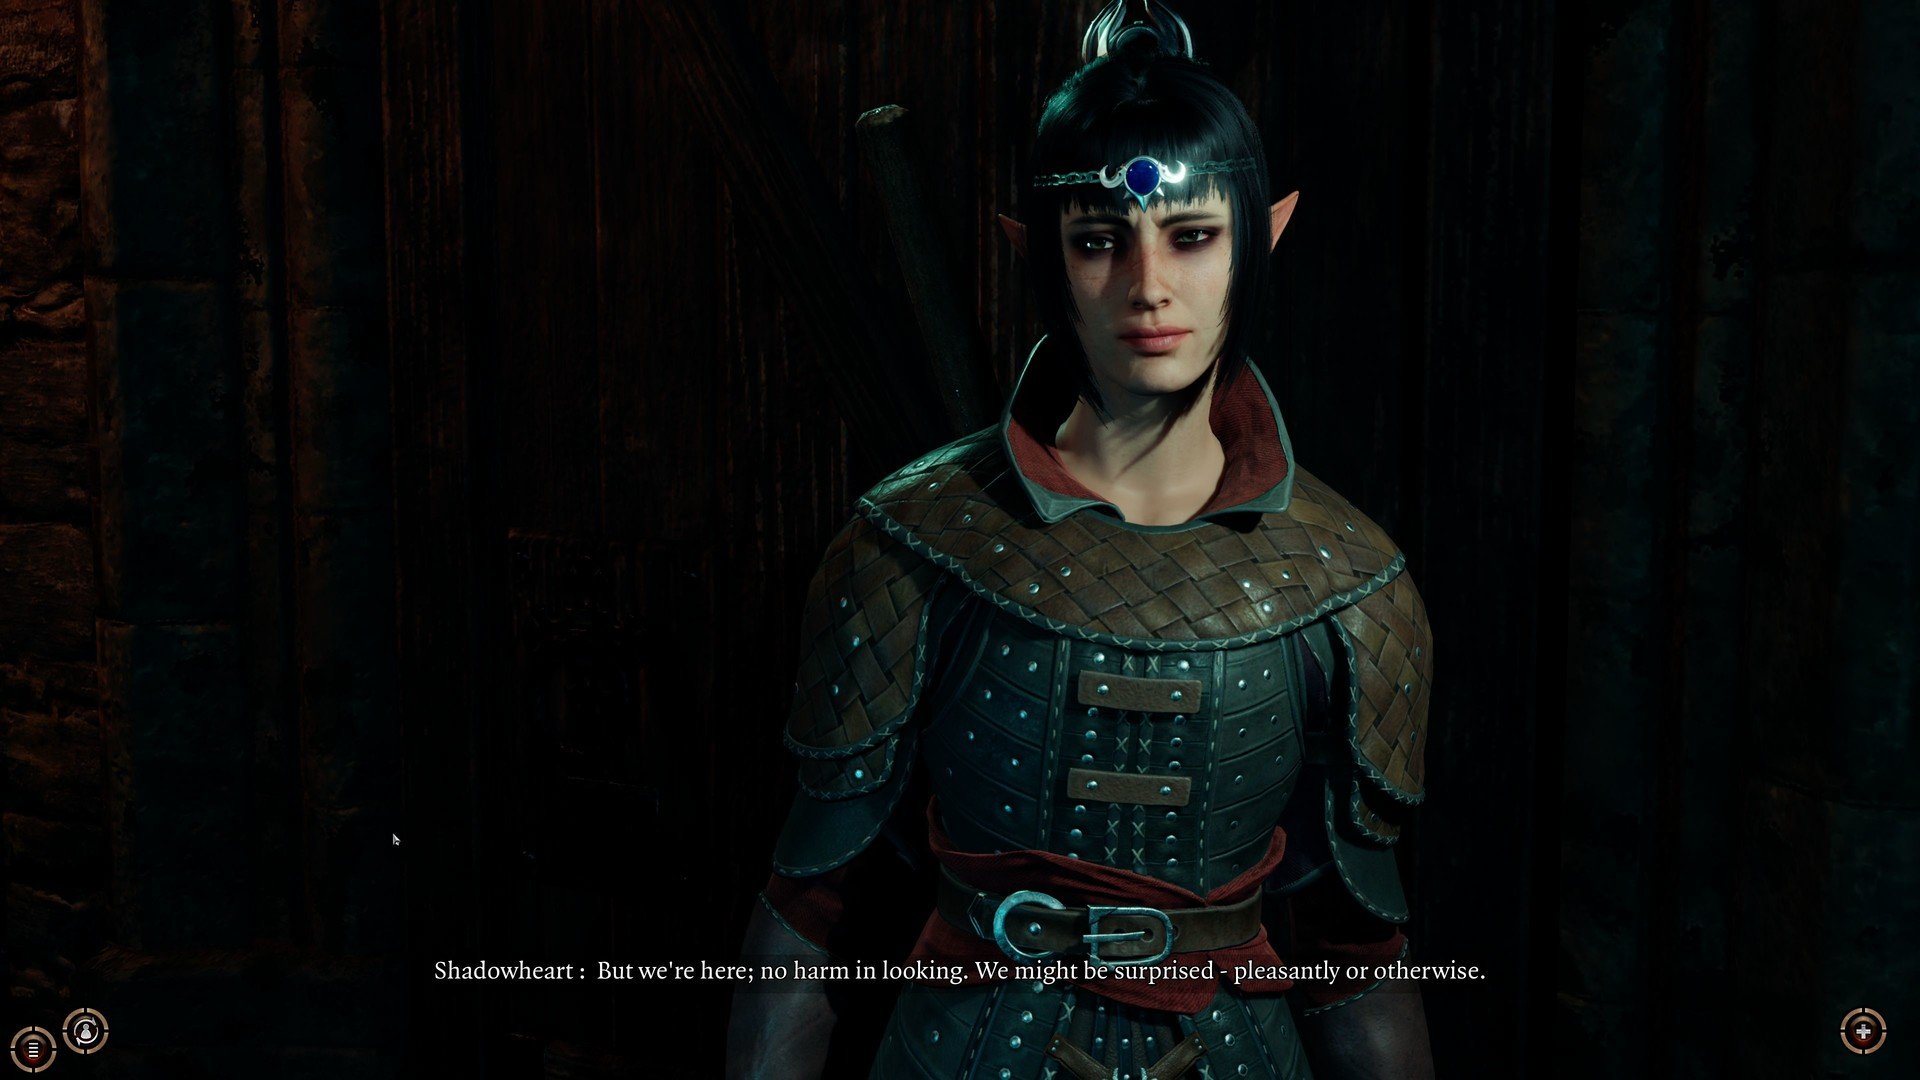 Скриншот 2 к игре Baldur's Gate 3 [4.1.90.6165 EA] (2020) скачать торрент RePack от R.G. Механики